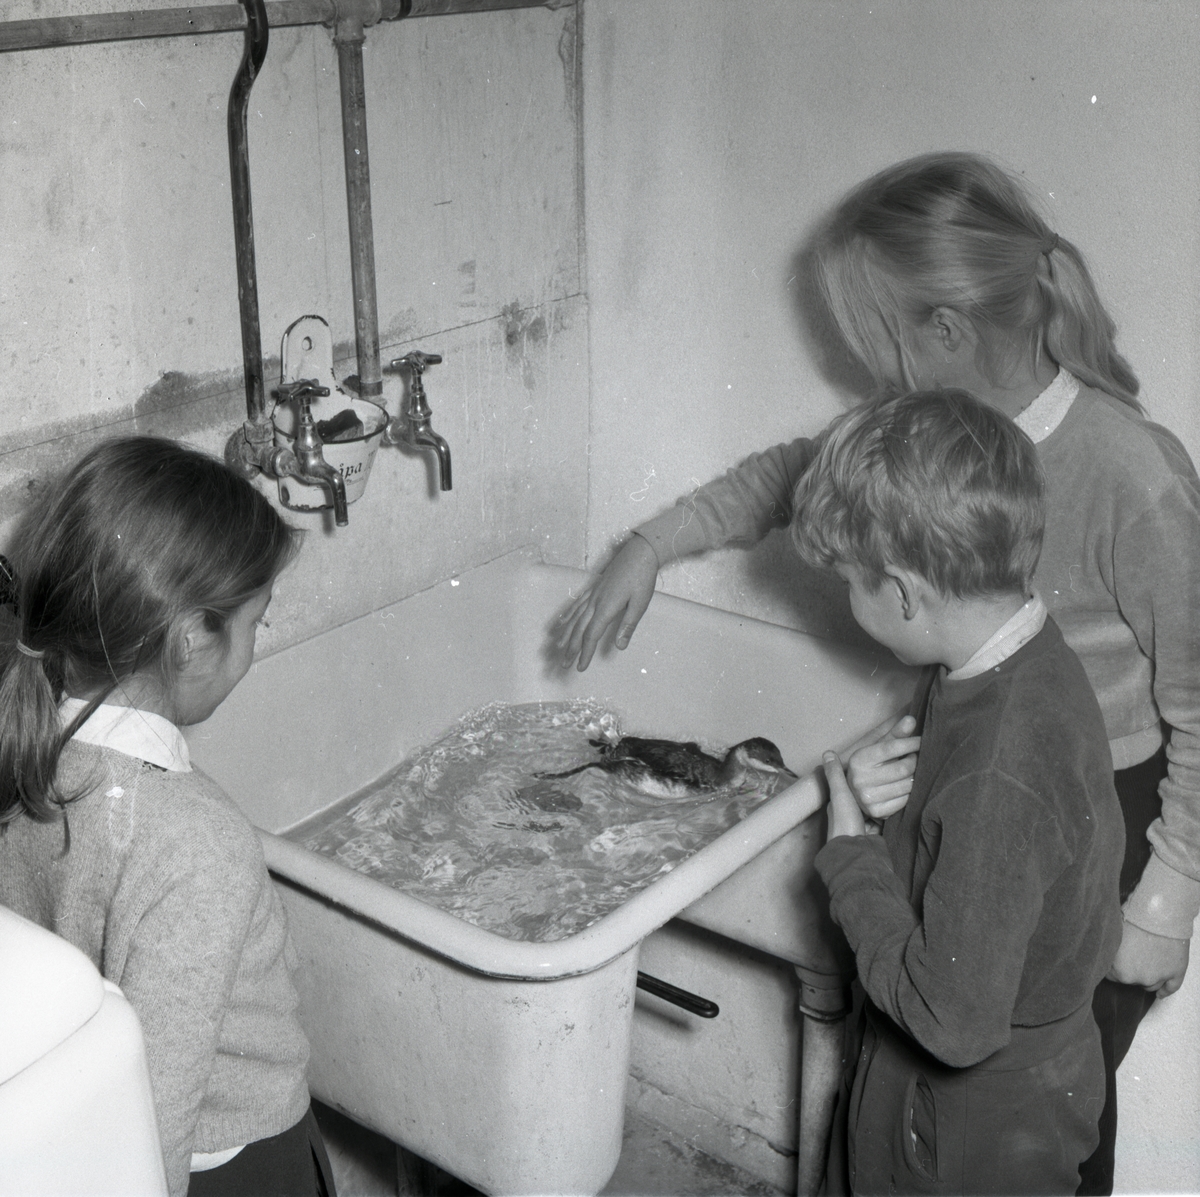 En skadad skägghakedopping får simträna i ett tvättställ i Midnäs, november 1953. Tre barn ser på och vill klappa fågeln.